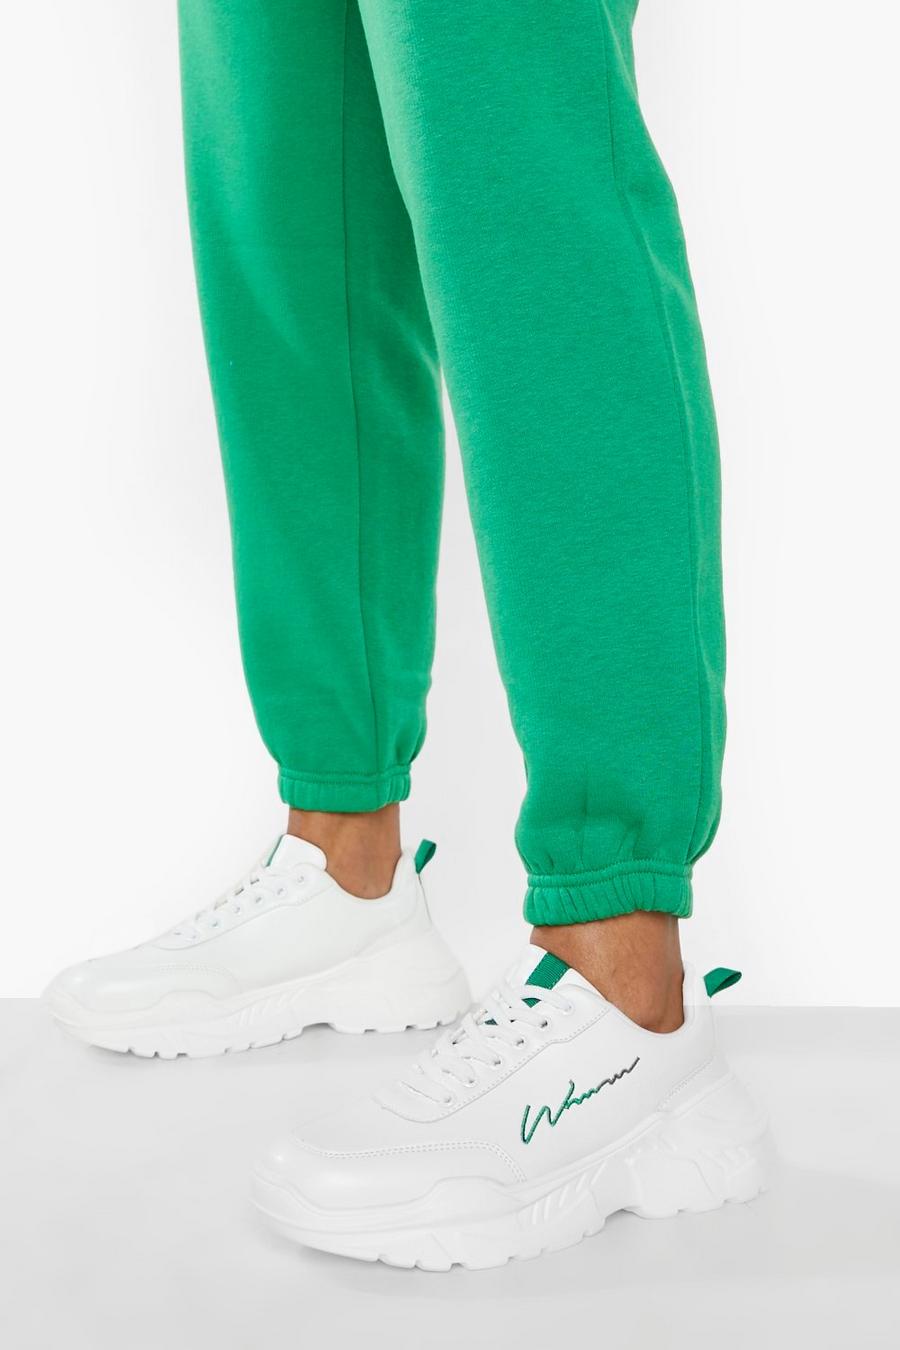 Scarpe da ginnastica con scritta Woman e suola spessa, Green gerde